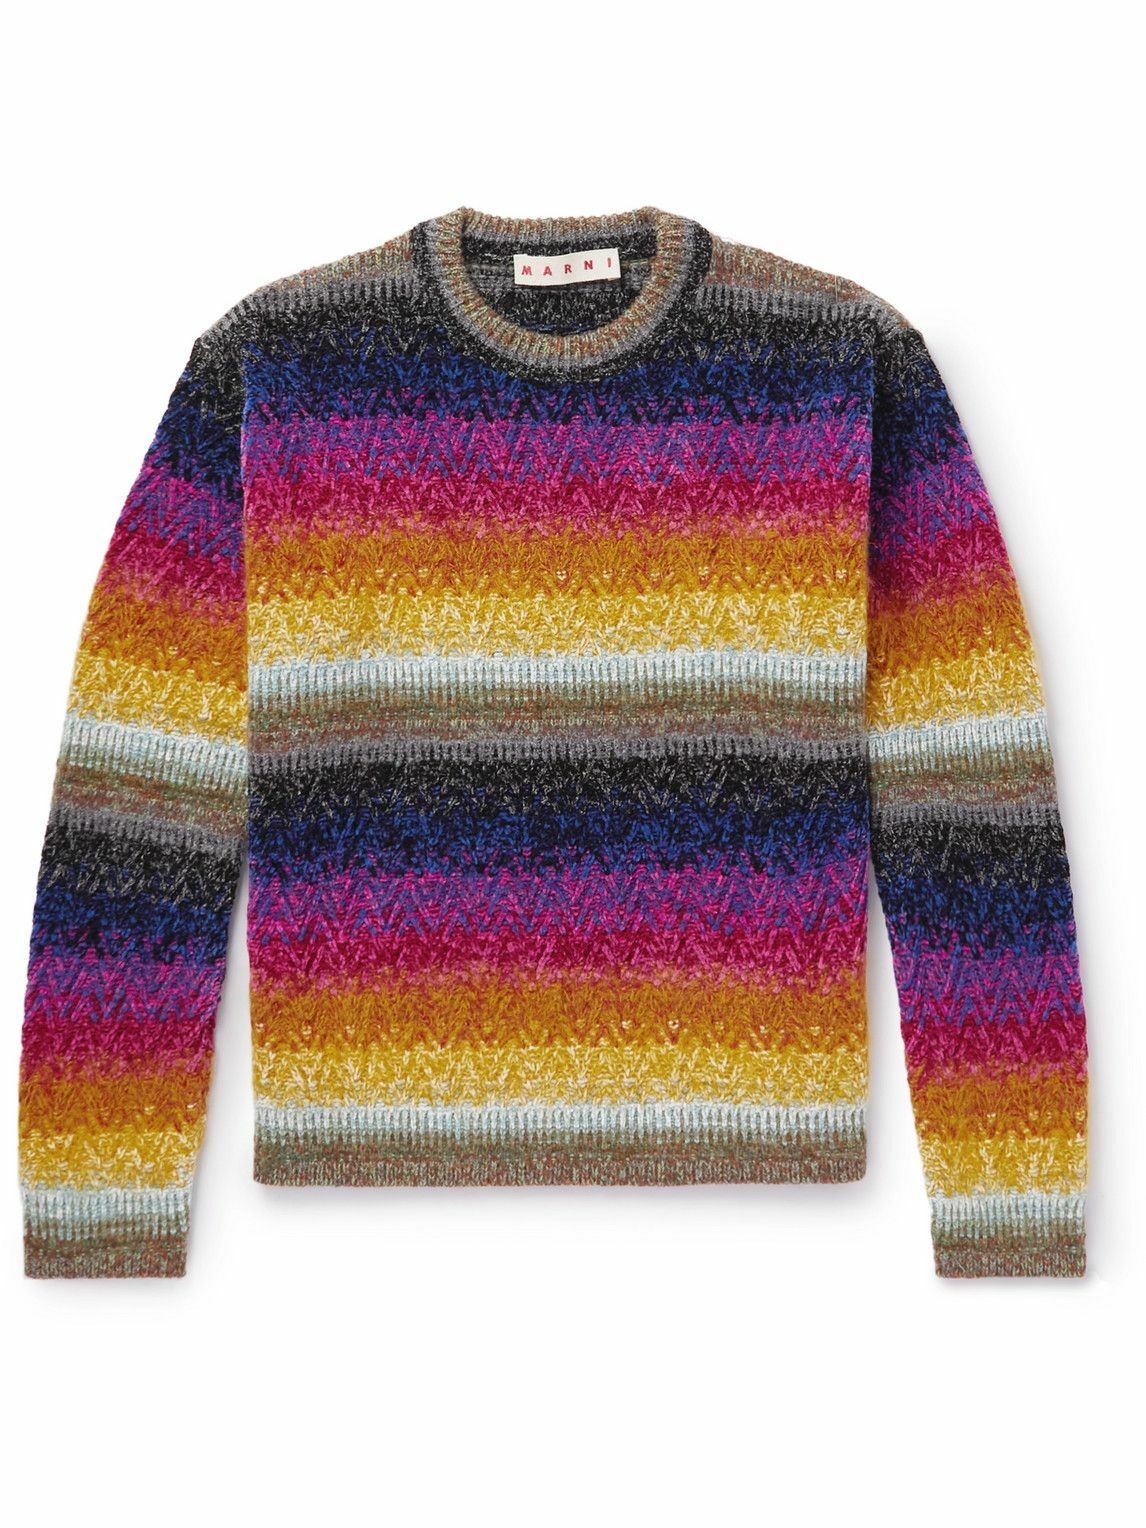 Marni - Striped Chenille Sweater - Multi Marni